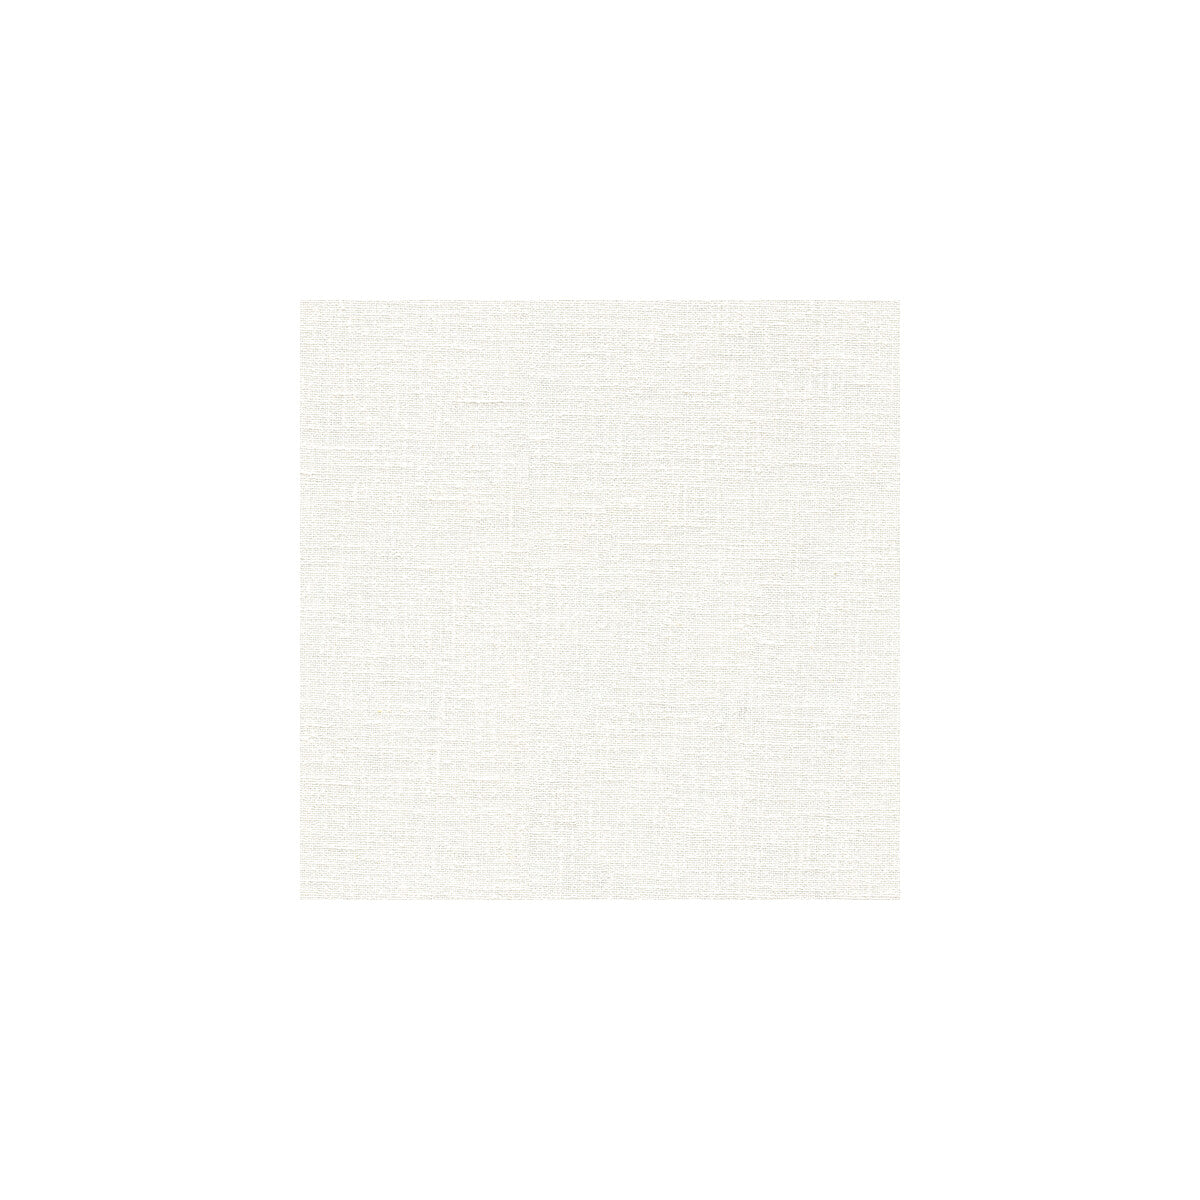 Kravet Basics fabric in 3783-101 color - pattern 3783.101.0 - by Kravet Basics